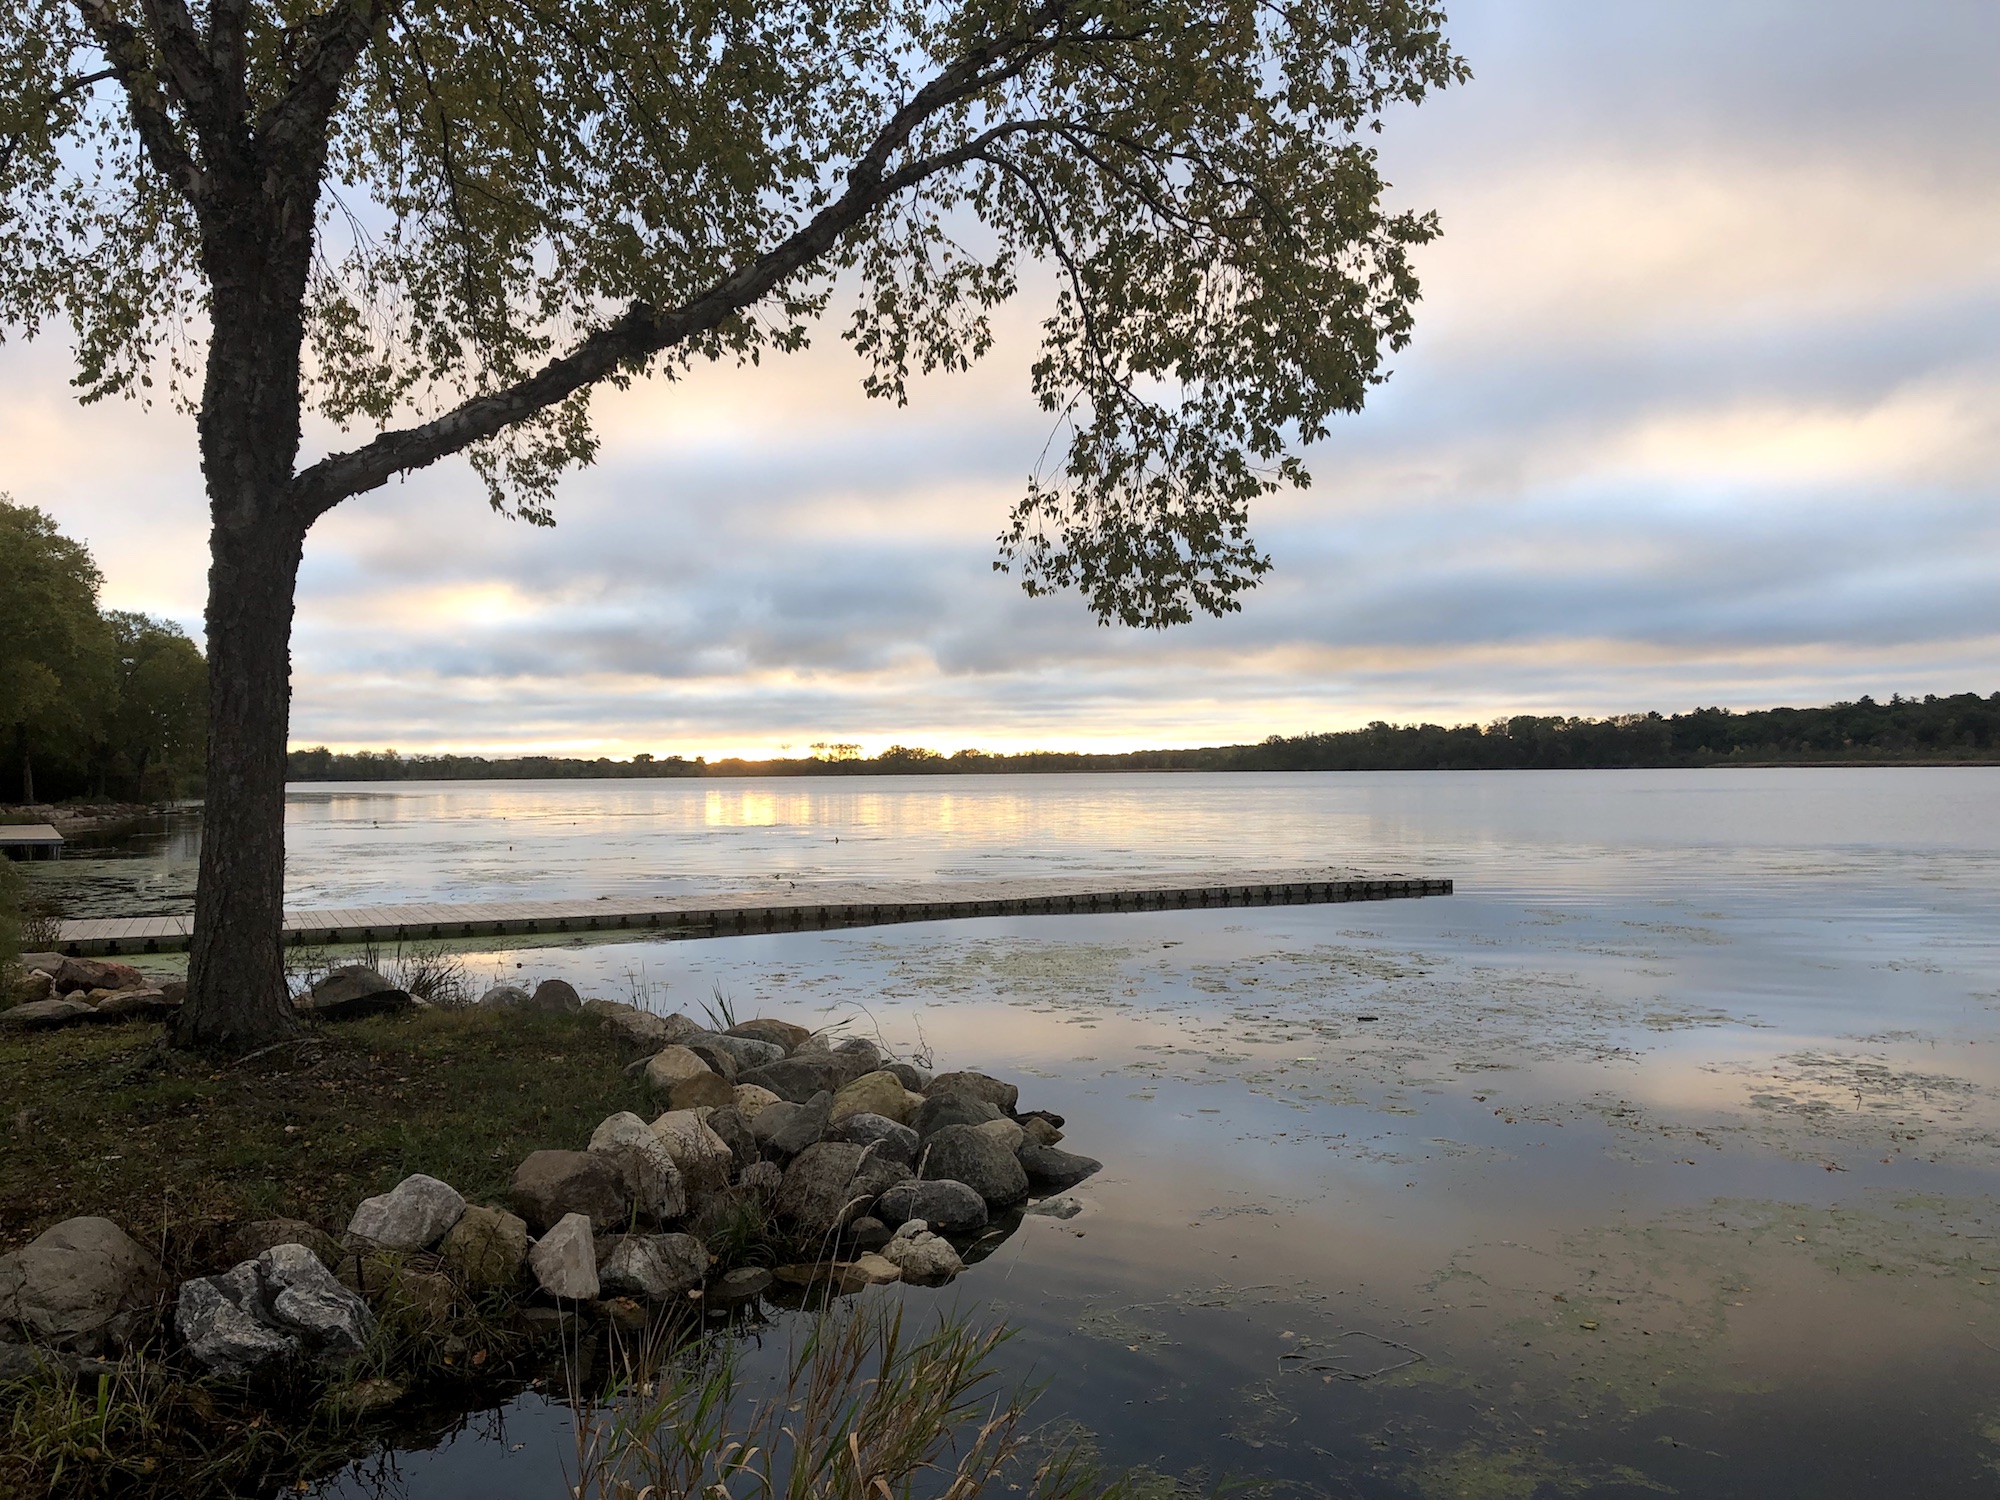 Lake Wingra on October 4, 2019.